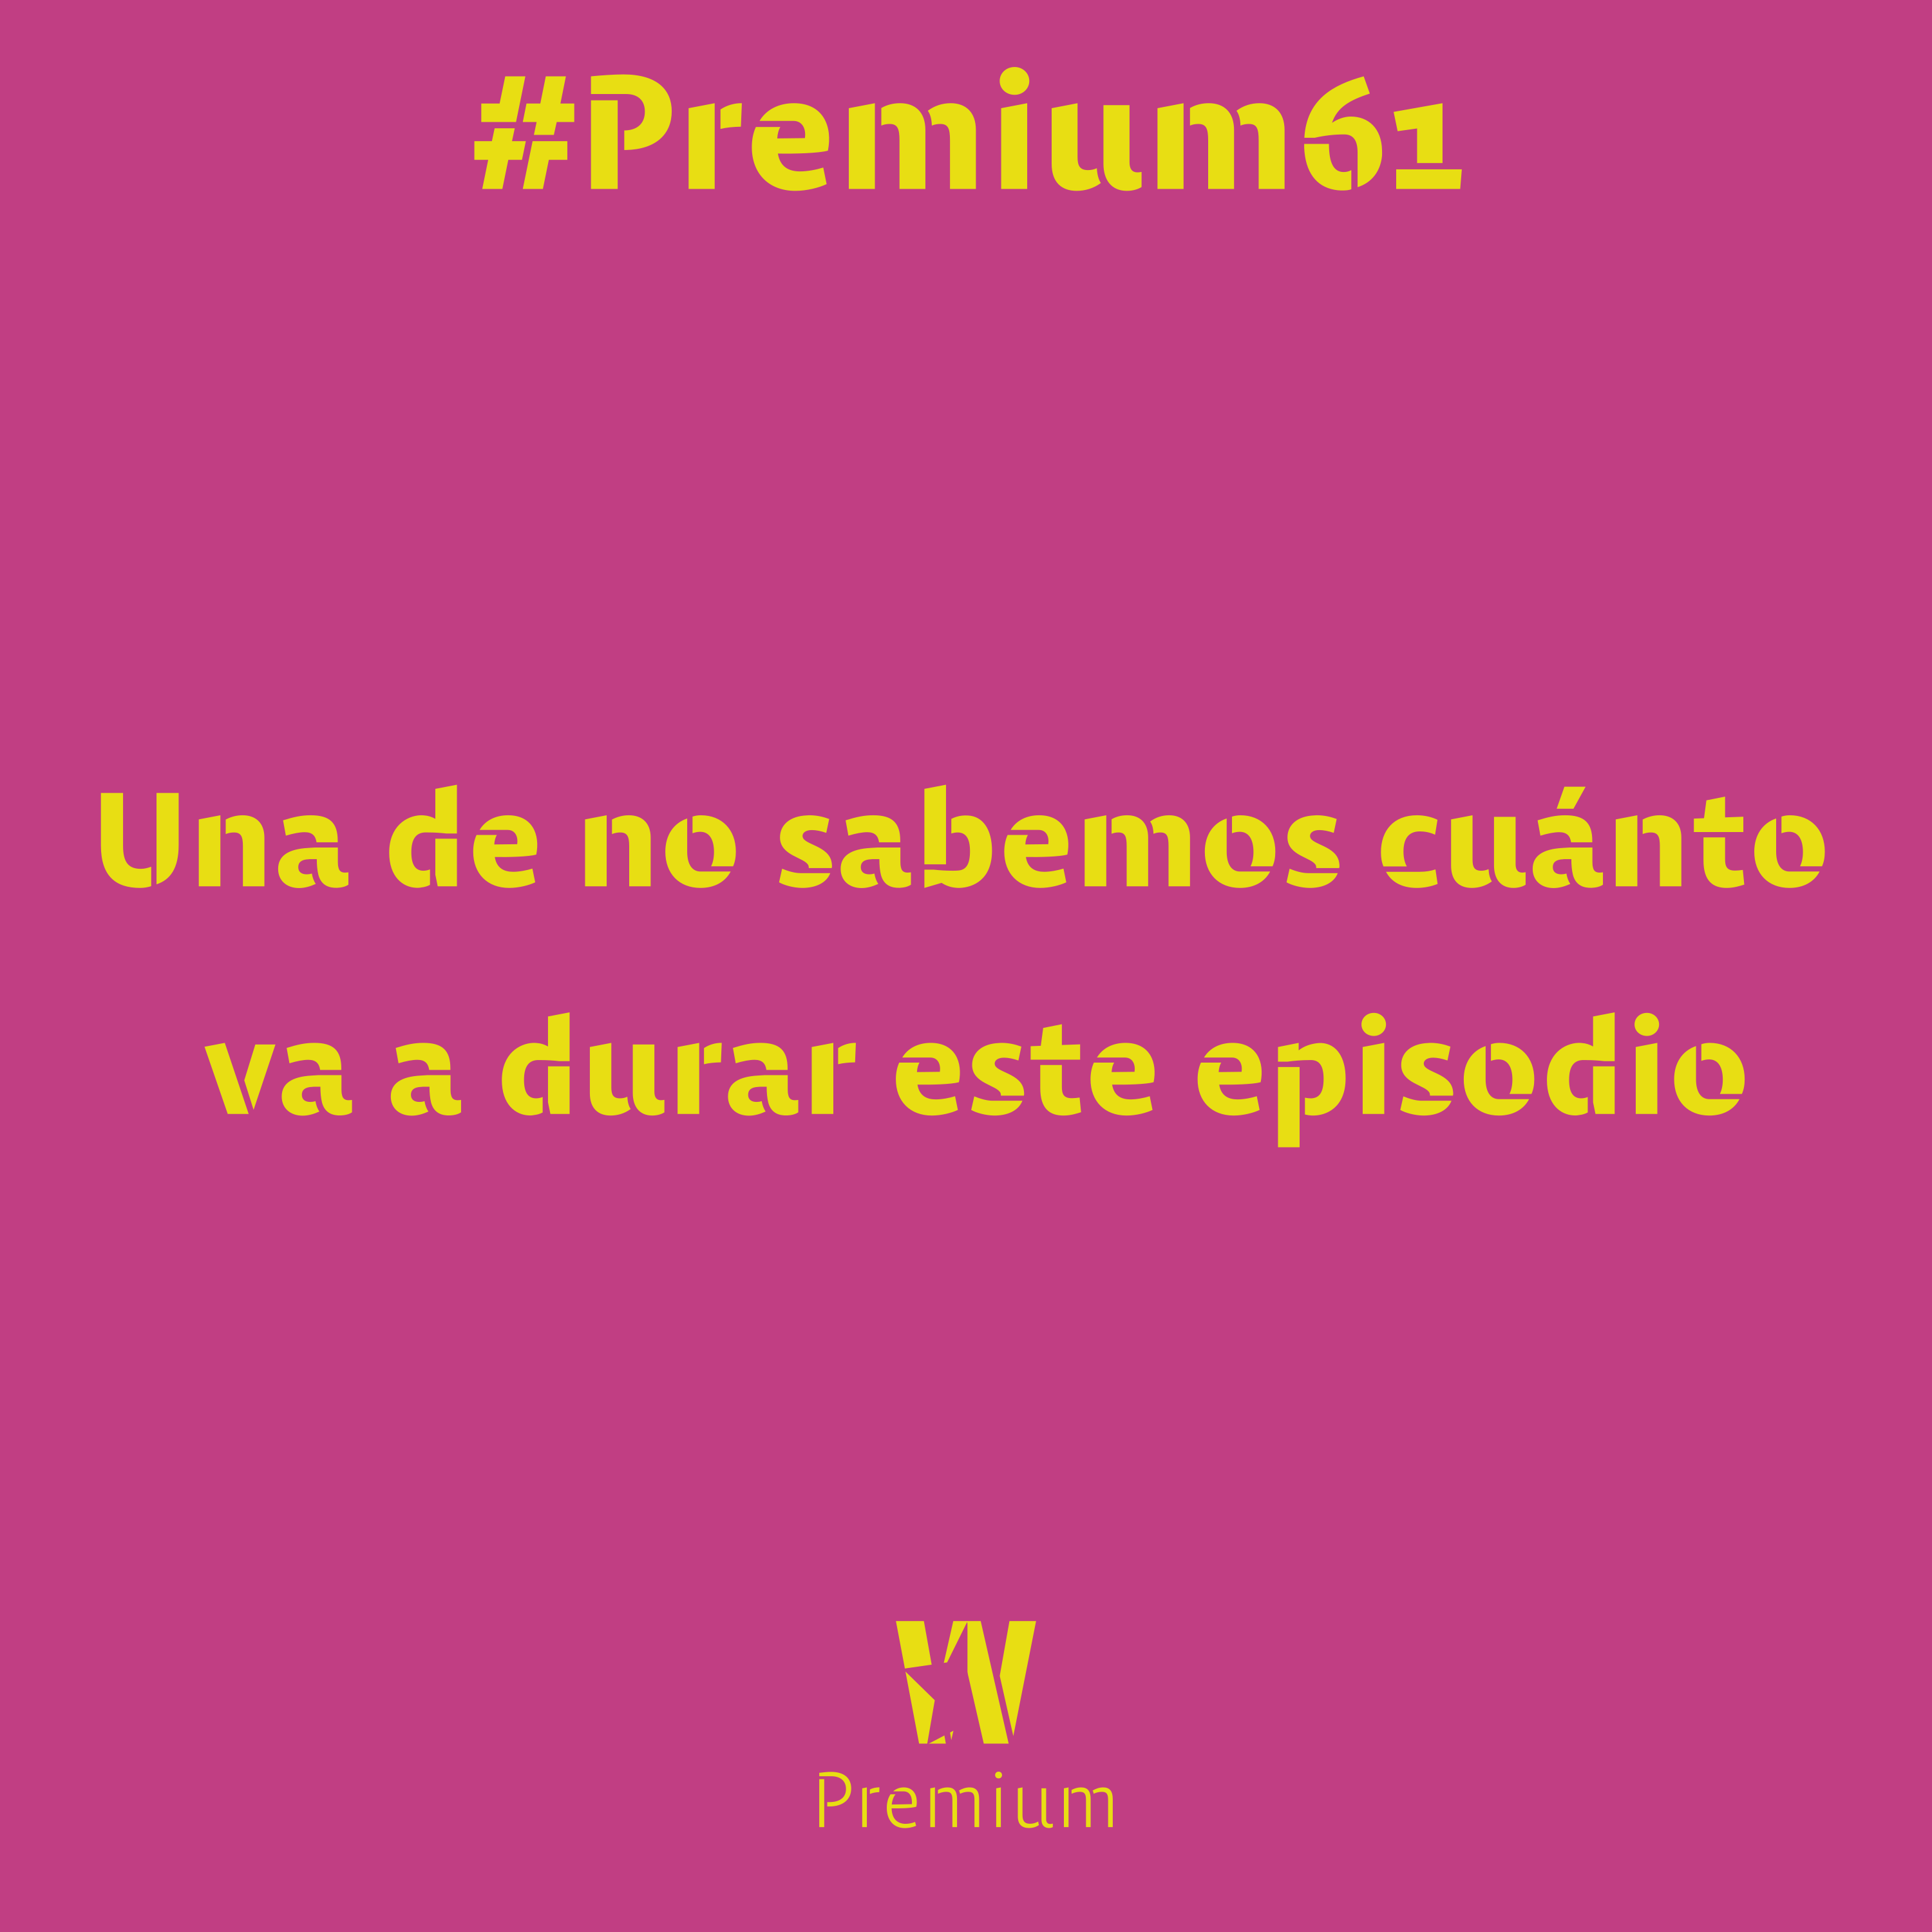 #Premium61 - Una de no sabemos cuánto va a durar este episodio